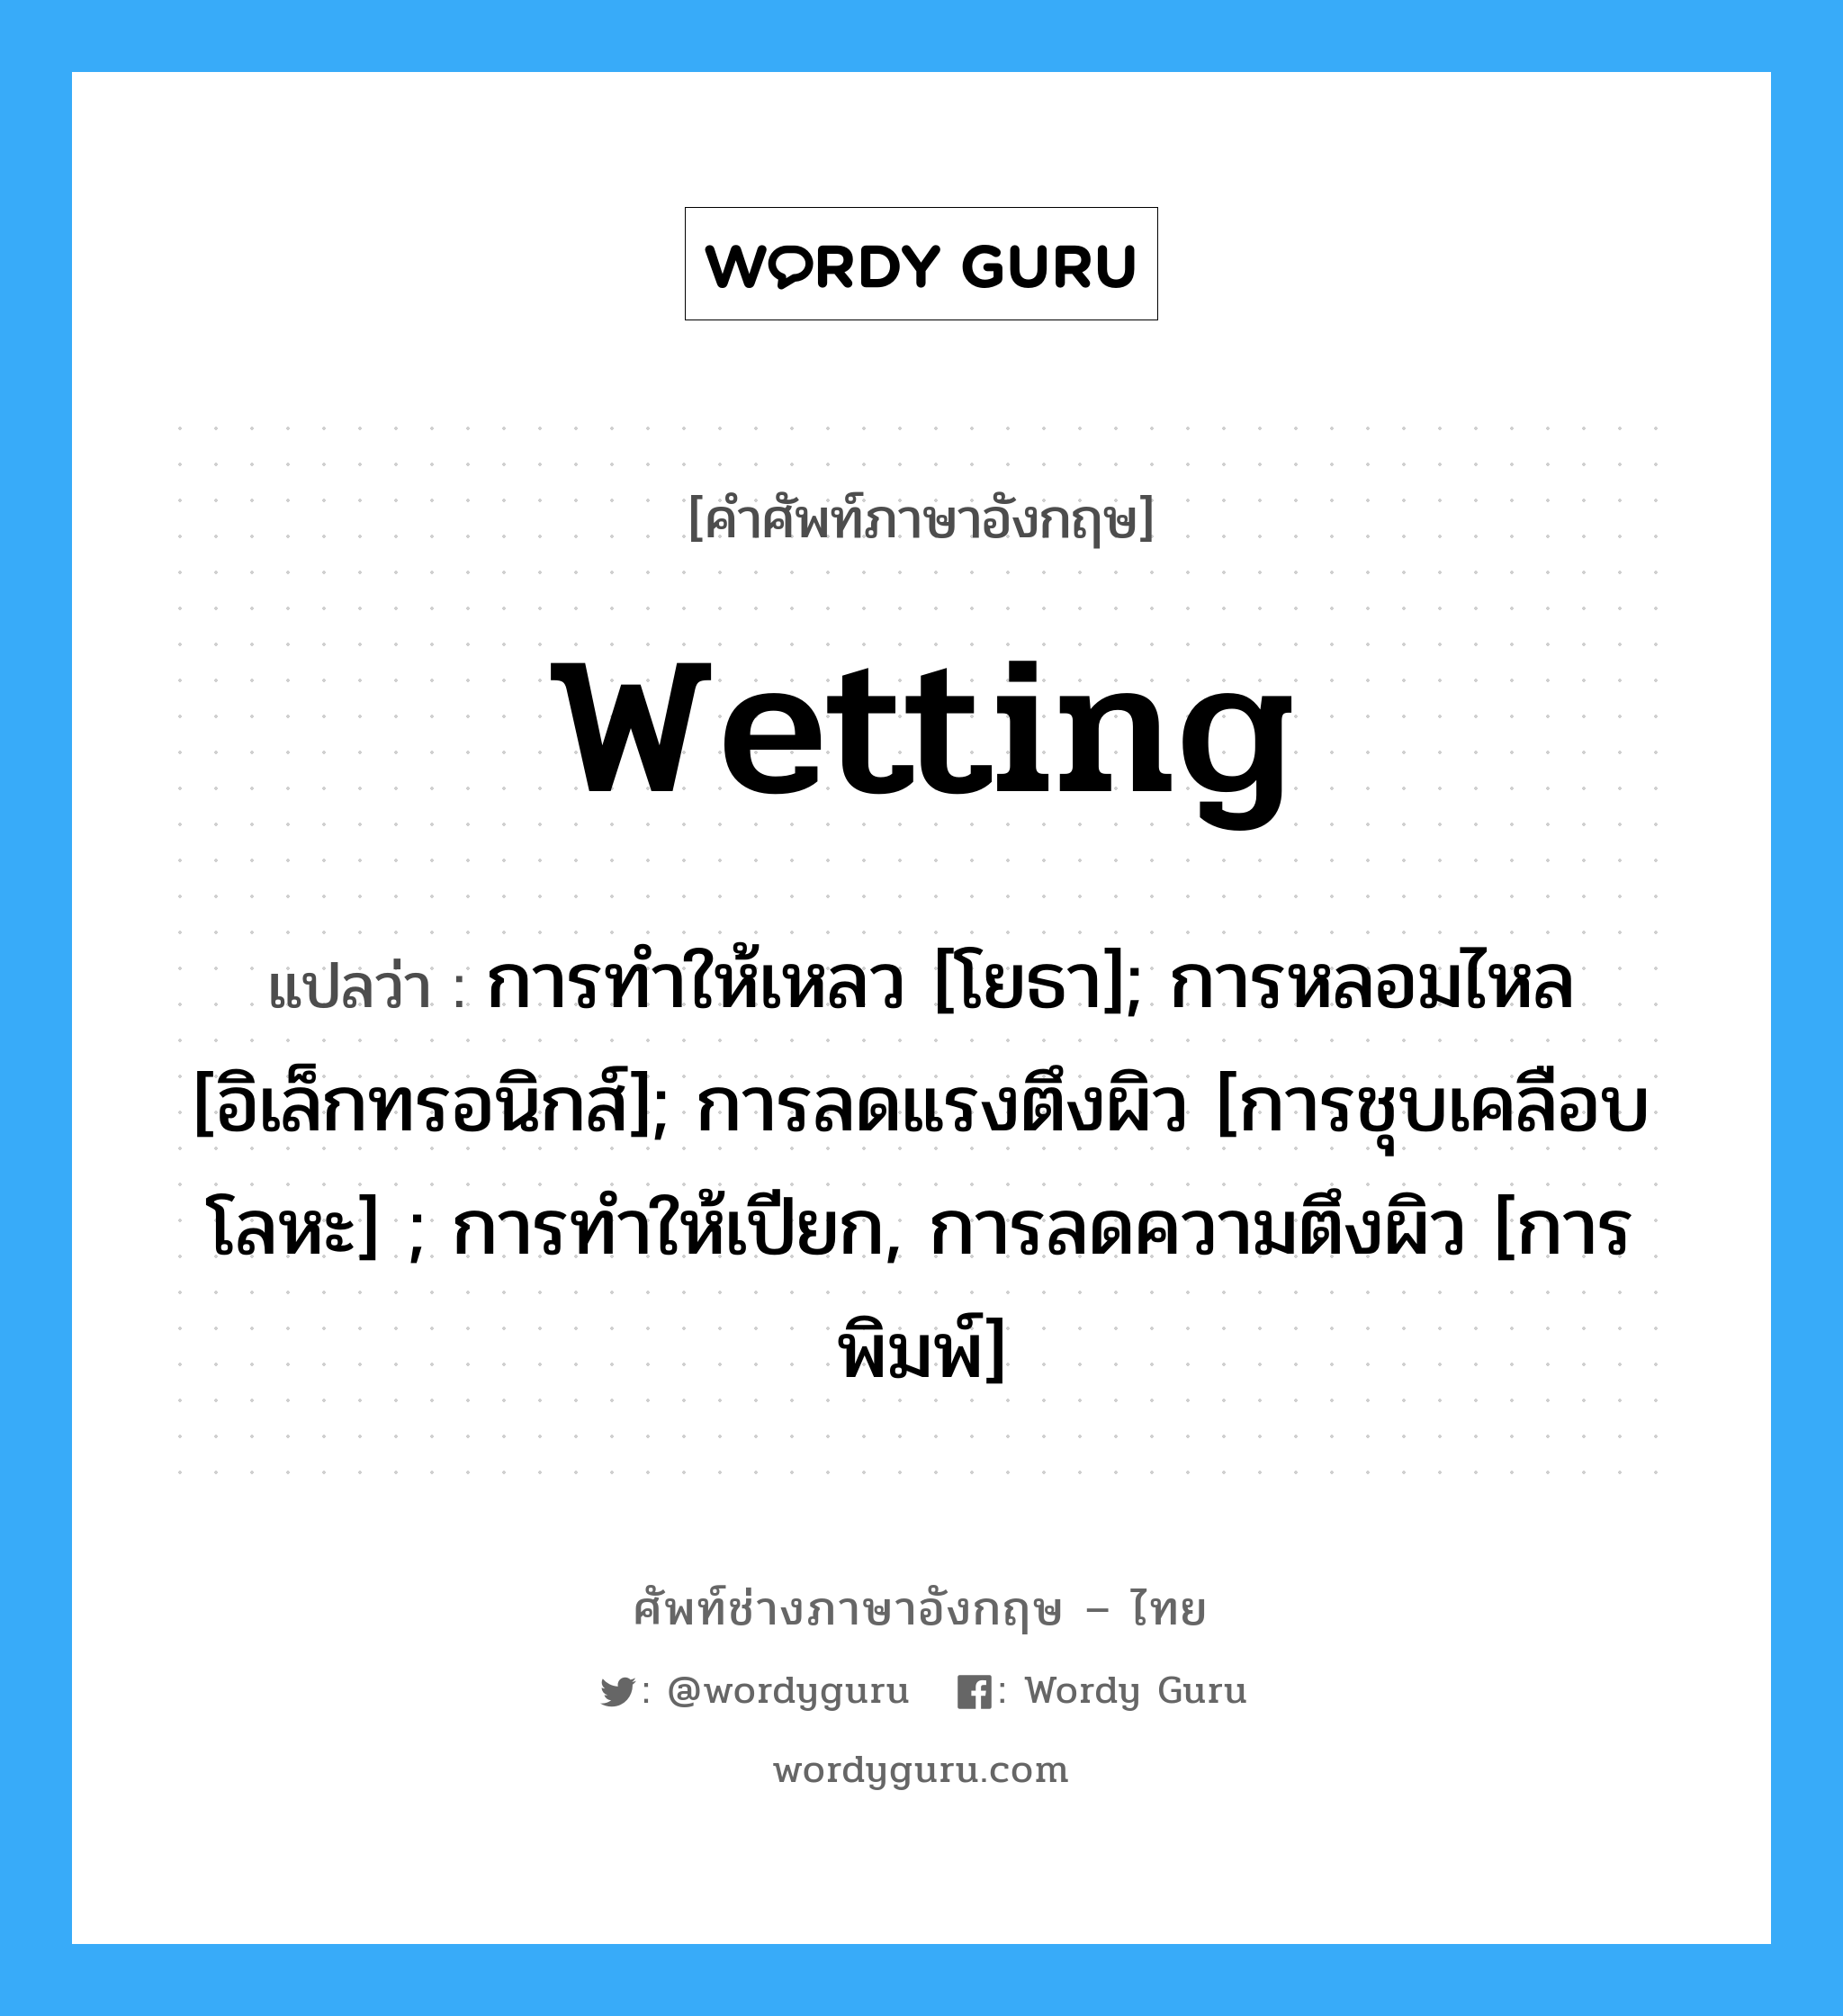 wetting แปลว่า?, คำศัพท์ช่างภาษาอังกฤษ - ไทย wetting คำศัพท์ภาษาอังกฤษ wetting แปลว่า การทำให้เหลว [โยธา]; การหลอมไหล [อิเล็กทรอนิกส์]; การลดแรงตึงผิว [การชุบเคลือบโลหะ] ; การทำให้เปียก, การลดความตึงผิว [การพิมพ์]